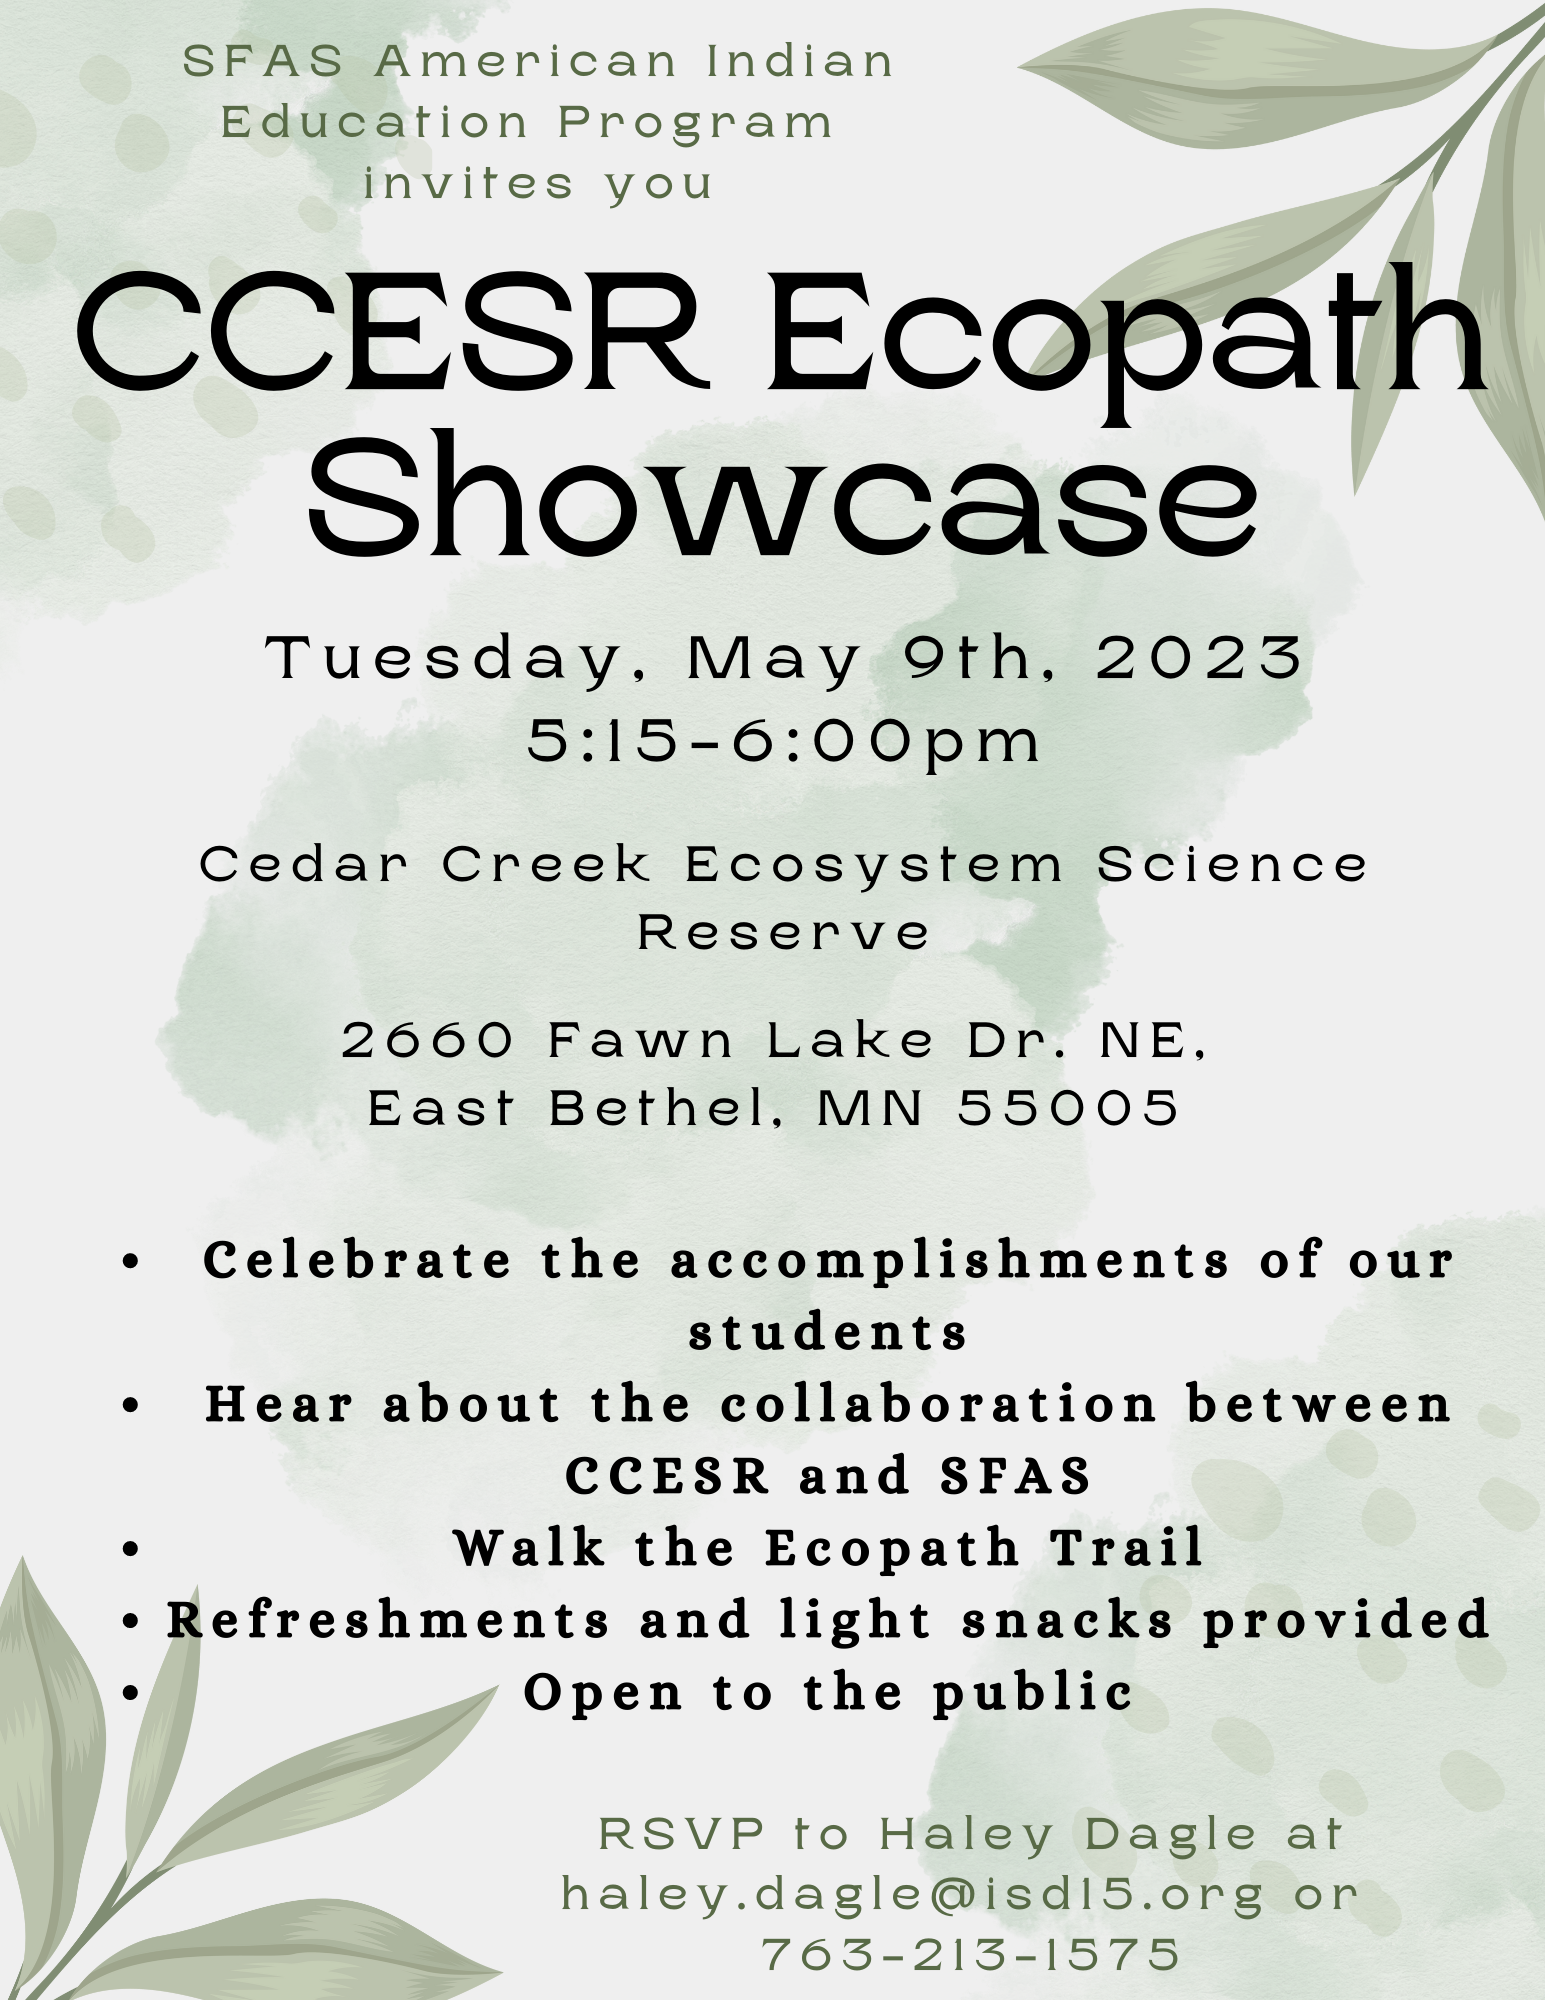 CCESR Ecopath Showcase